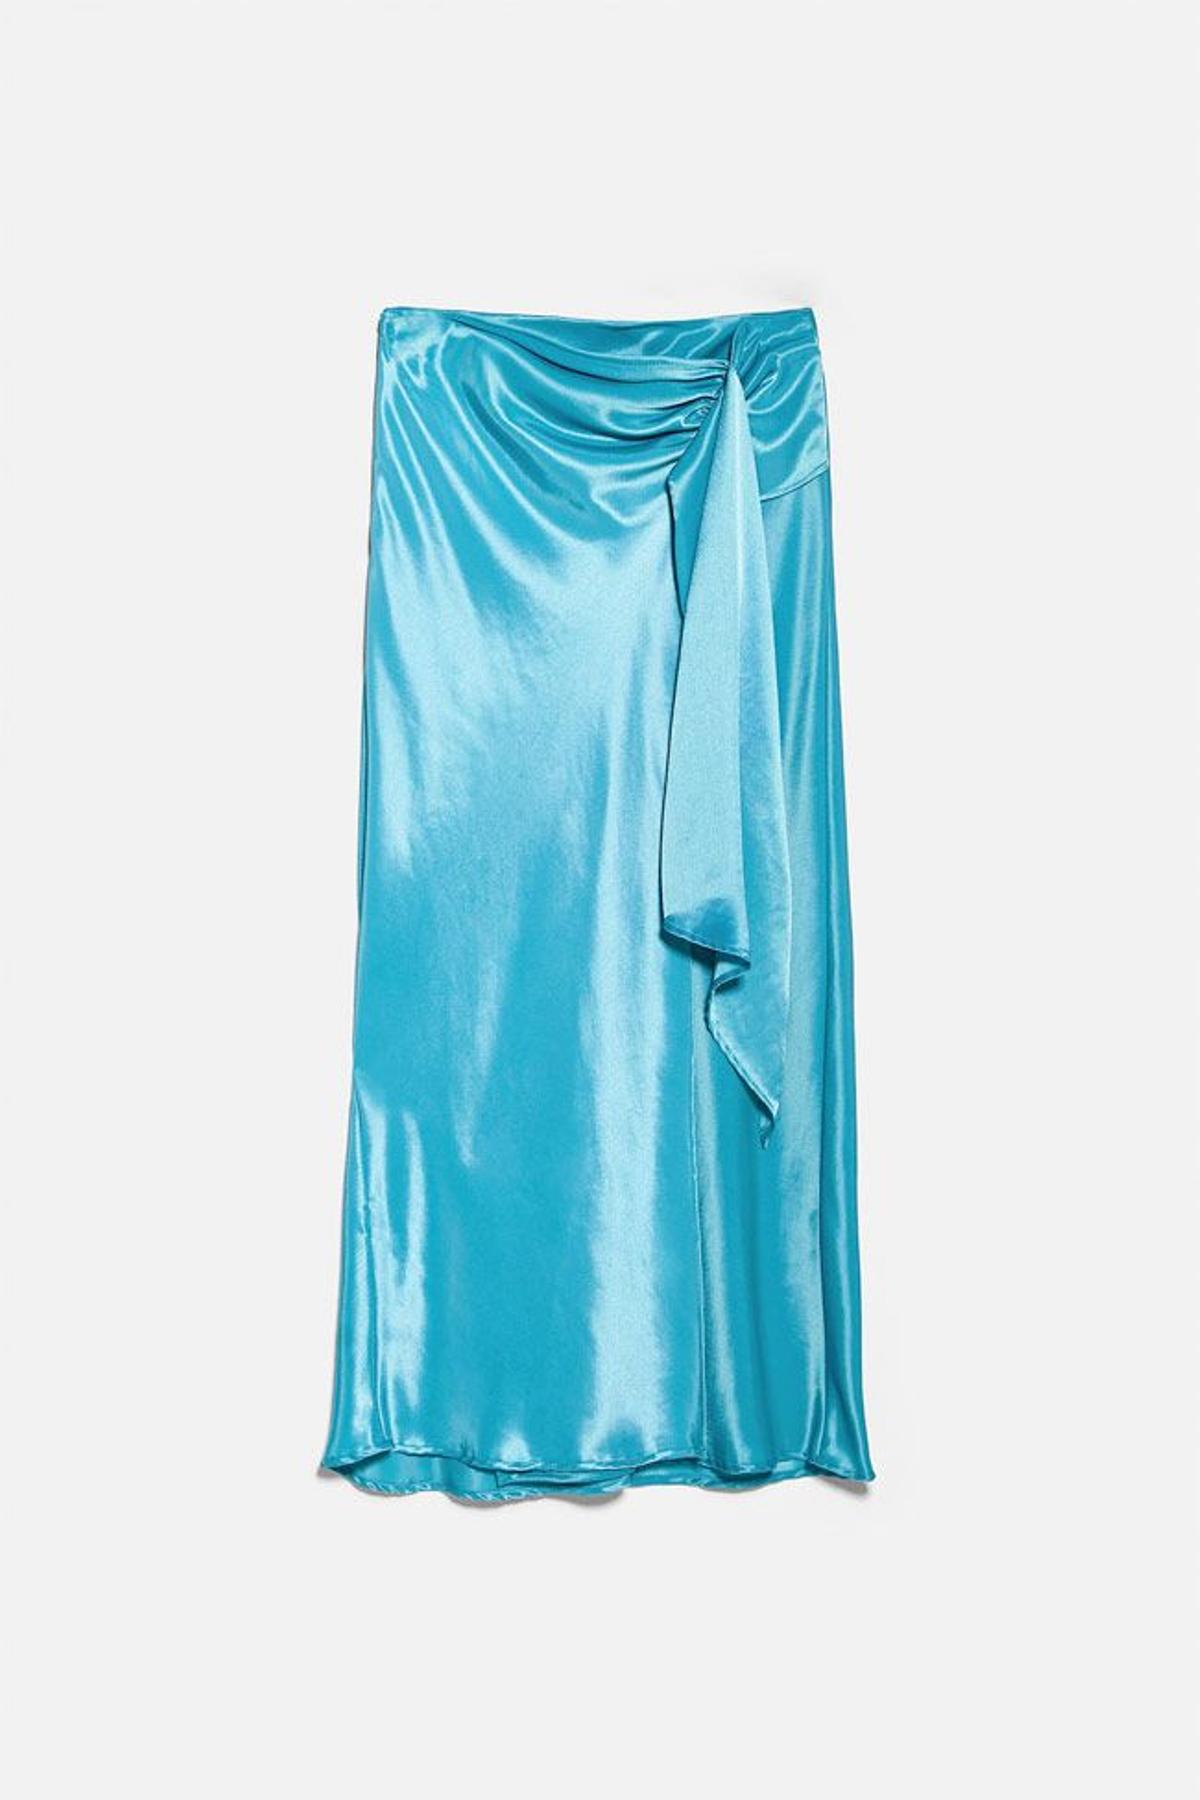 Falda 'midi' satinada de color azul turquesa con nudo y abertura cruzada, de Zara